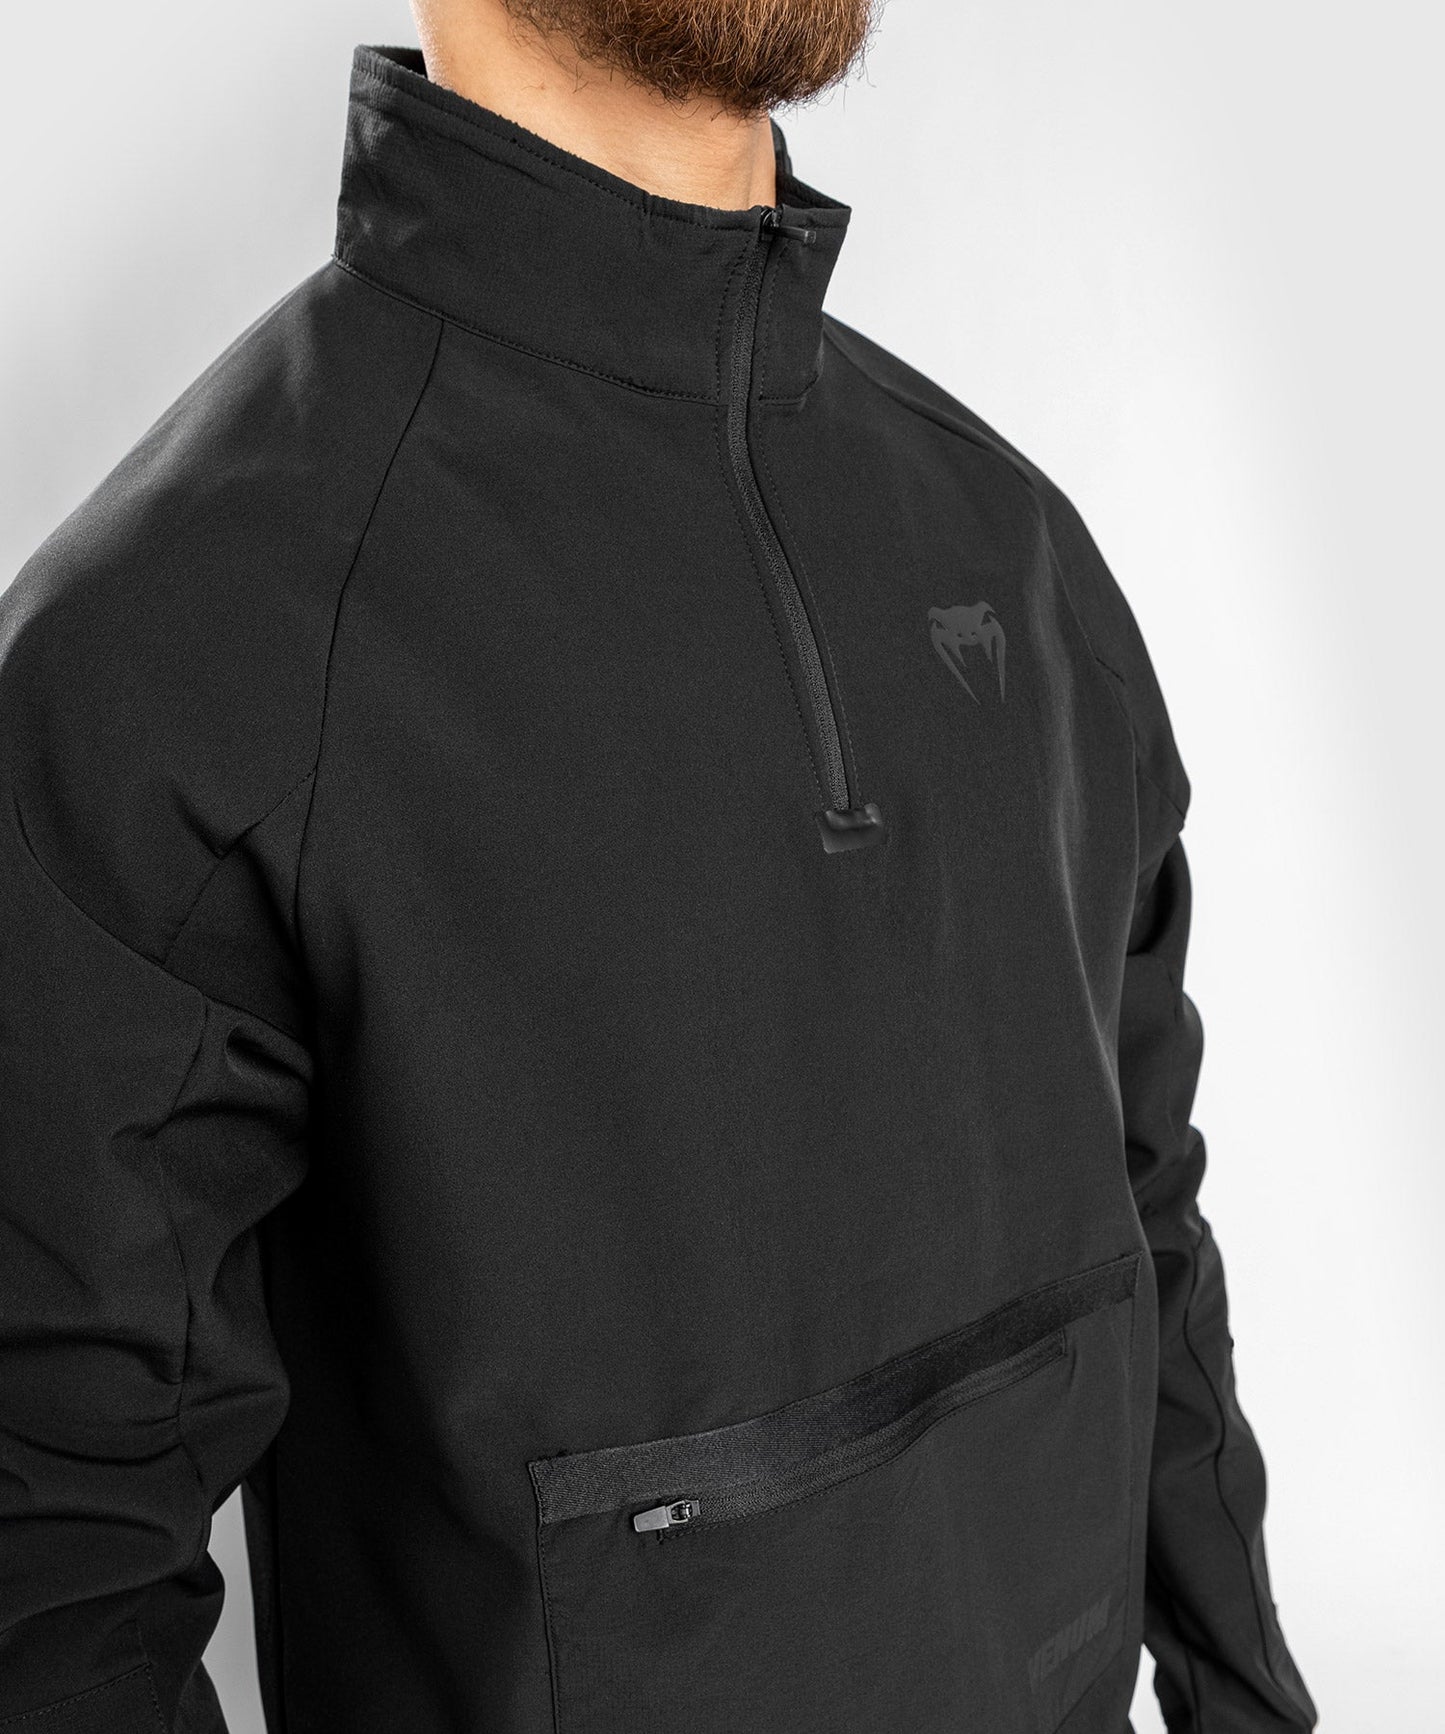 Venum Altitude Half-Zip Sweater  - Black